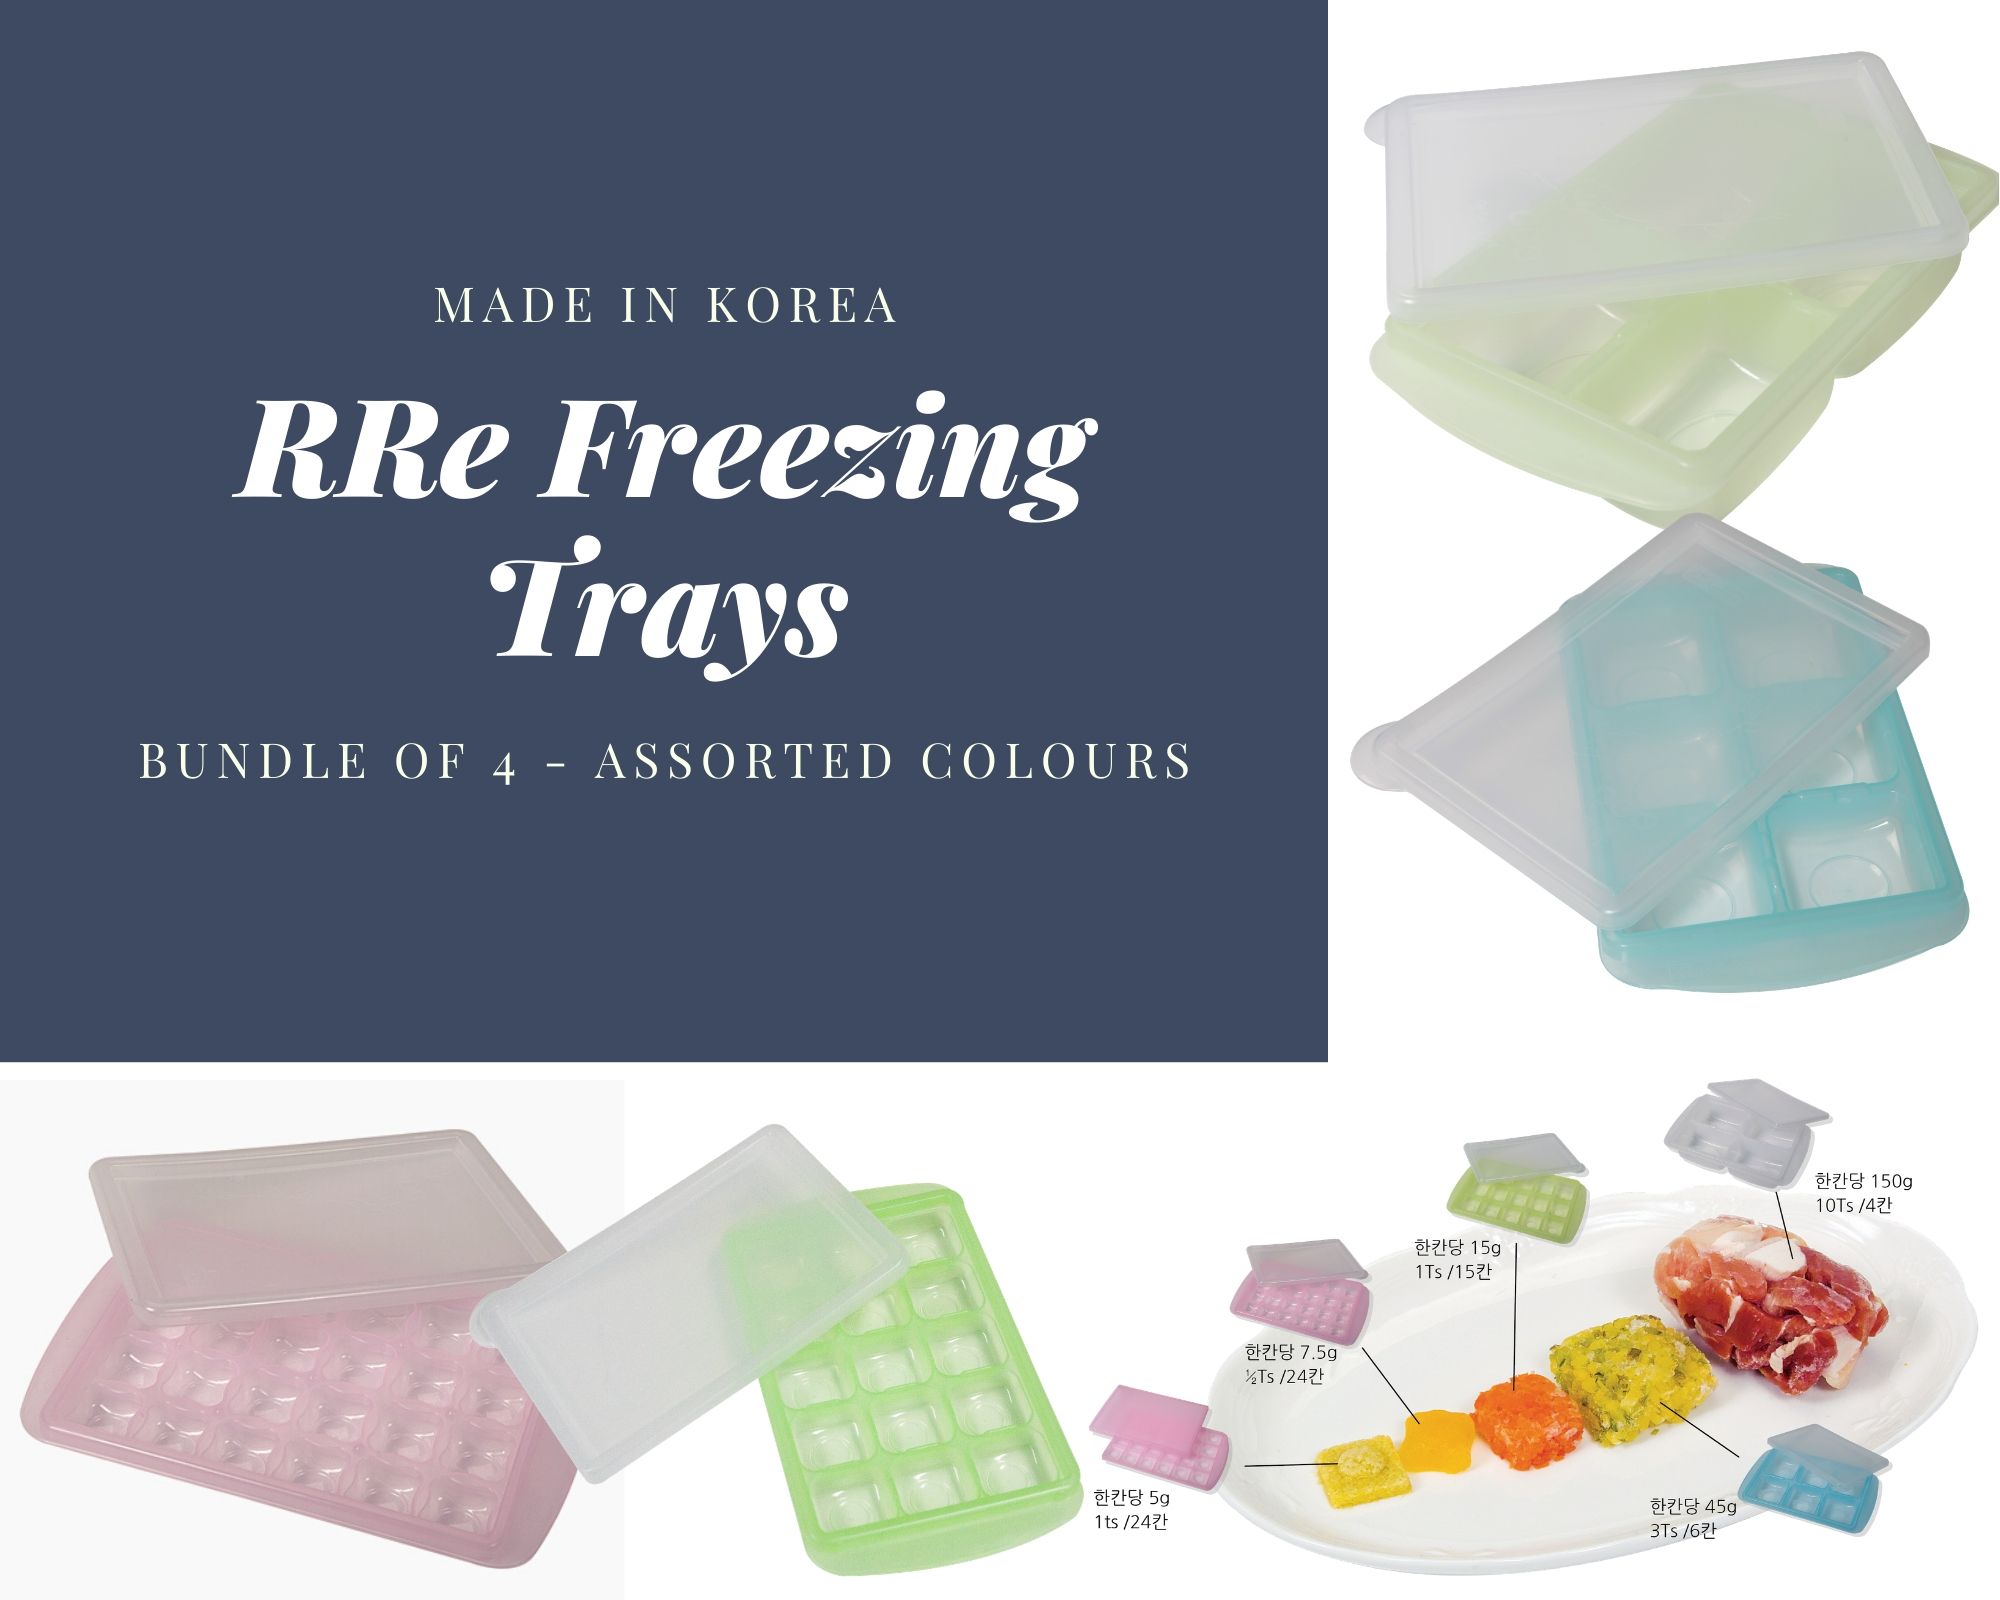 RRE Freezing Tray 2 Sizes (15g + 45g)